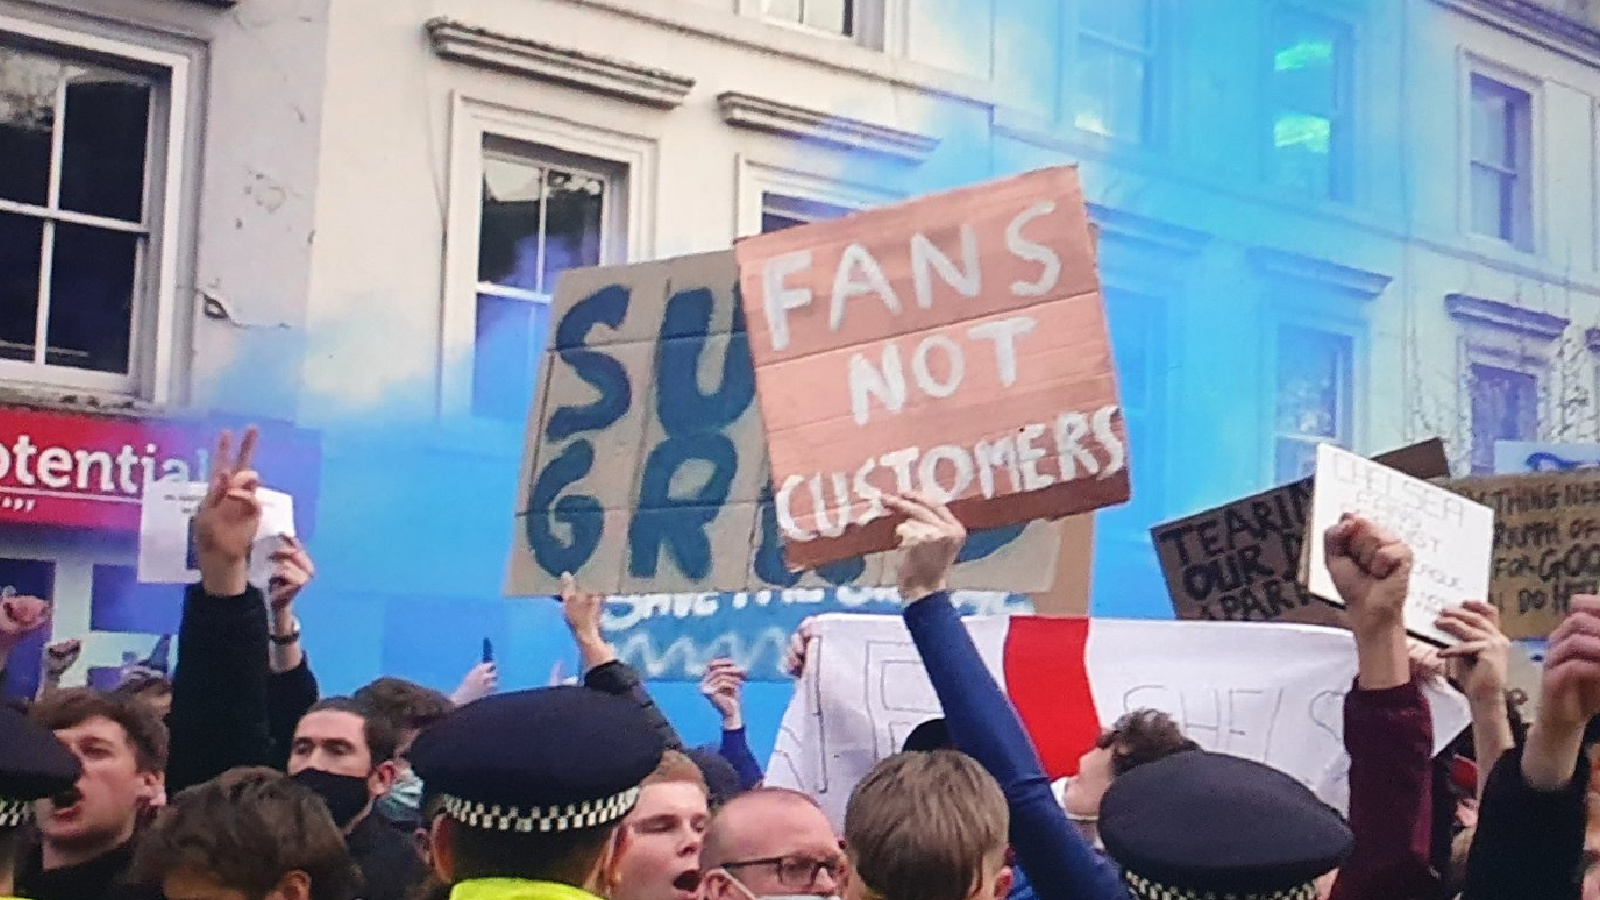 Chelsea fans protest against Super League outside Stamford Bridge